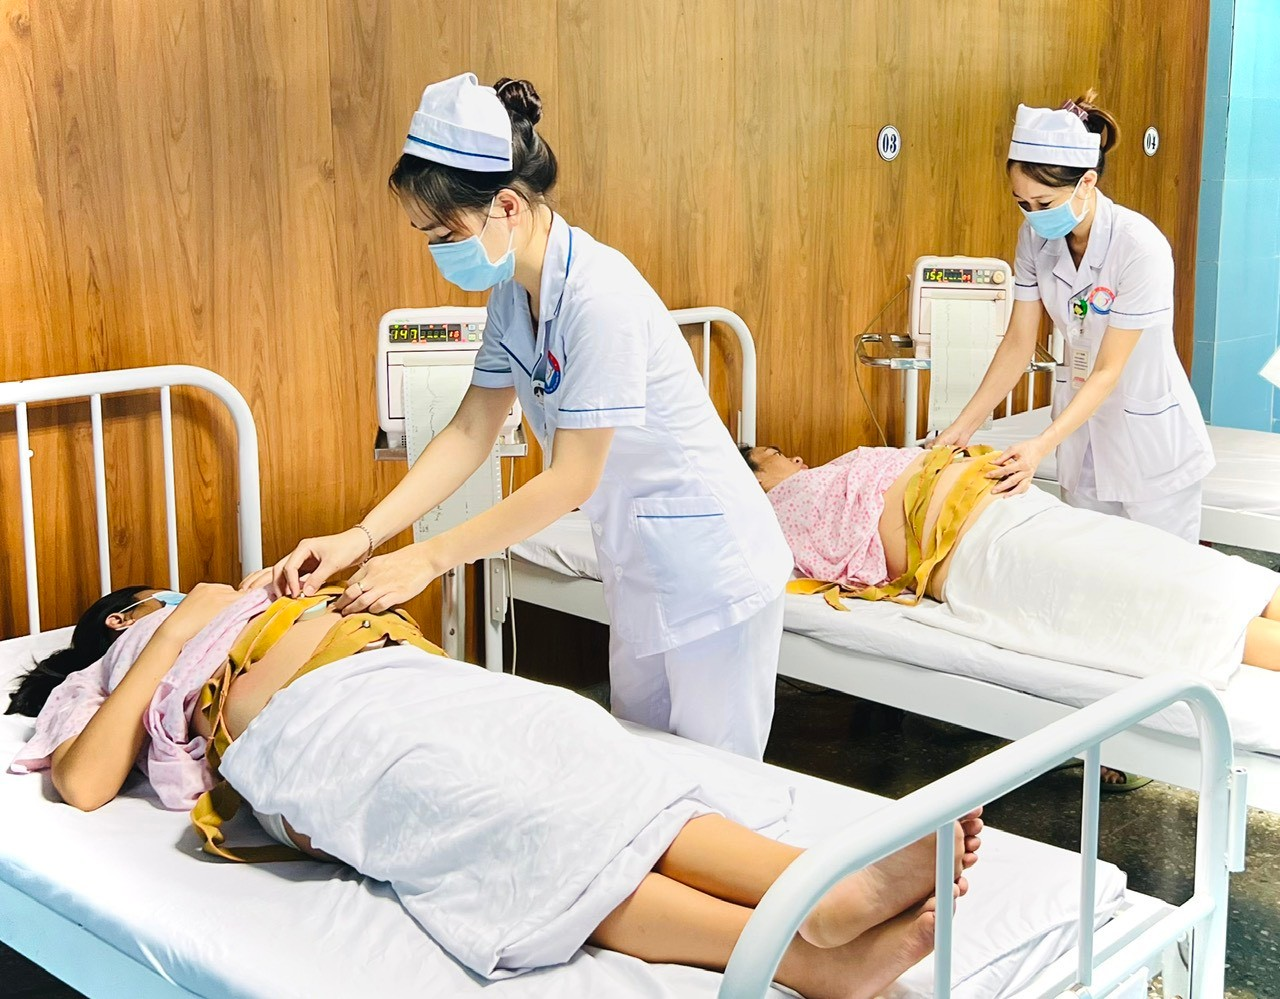 Bệnh viện Hữu nghị Việt Nam – Cu Ba Đồng Hới: Tận tâm vì sức khỏe, sự sống, niềm tin của người bệnh